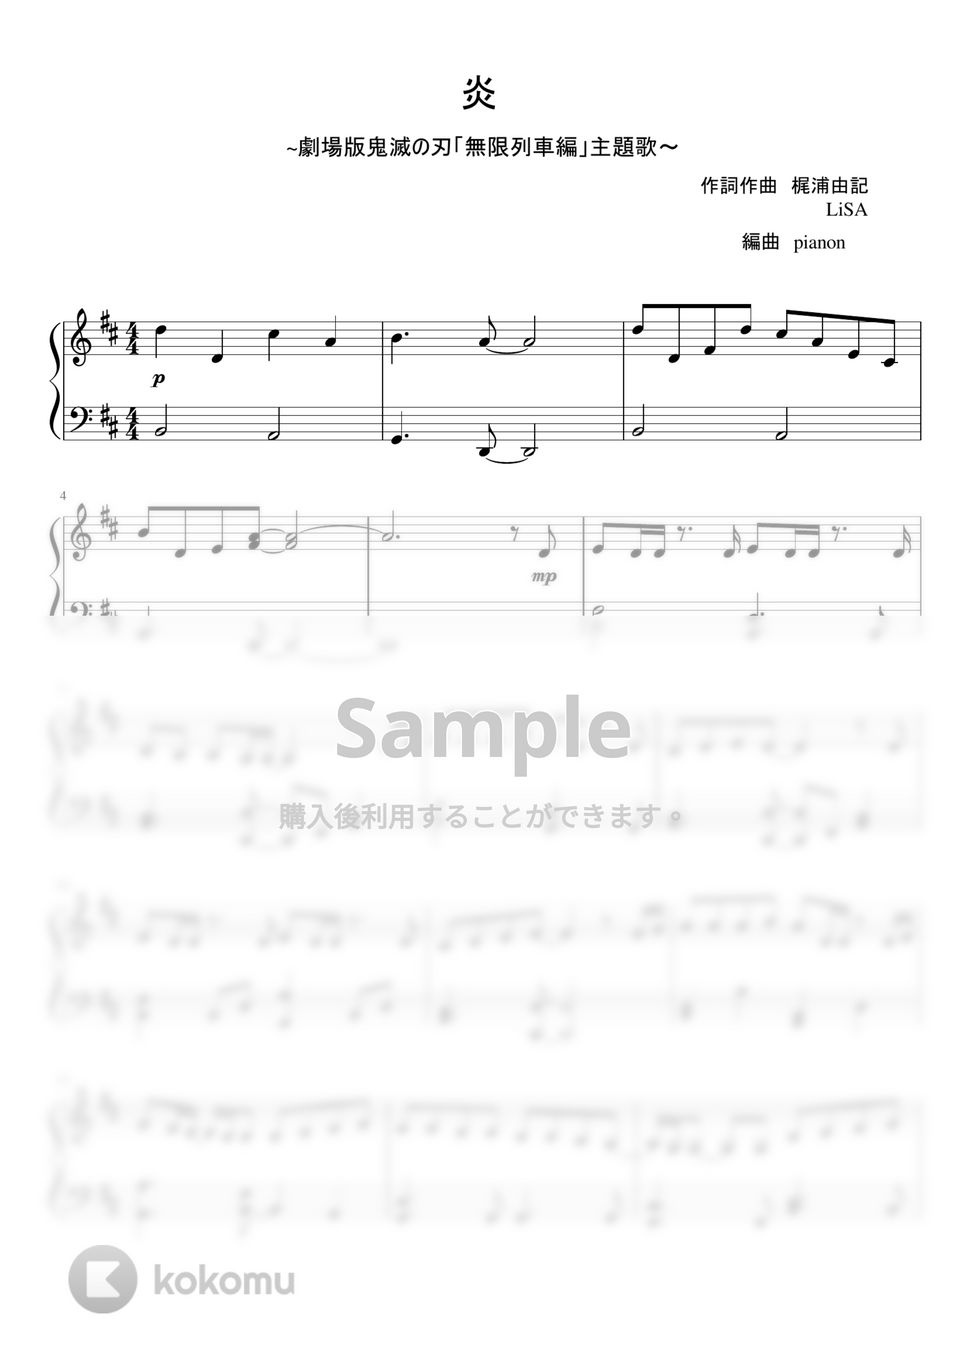 LiSA - 炎 (ピアノ中級) by pianon